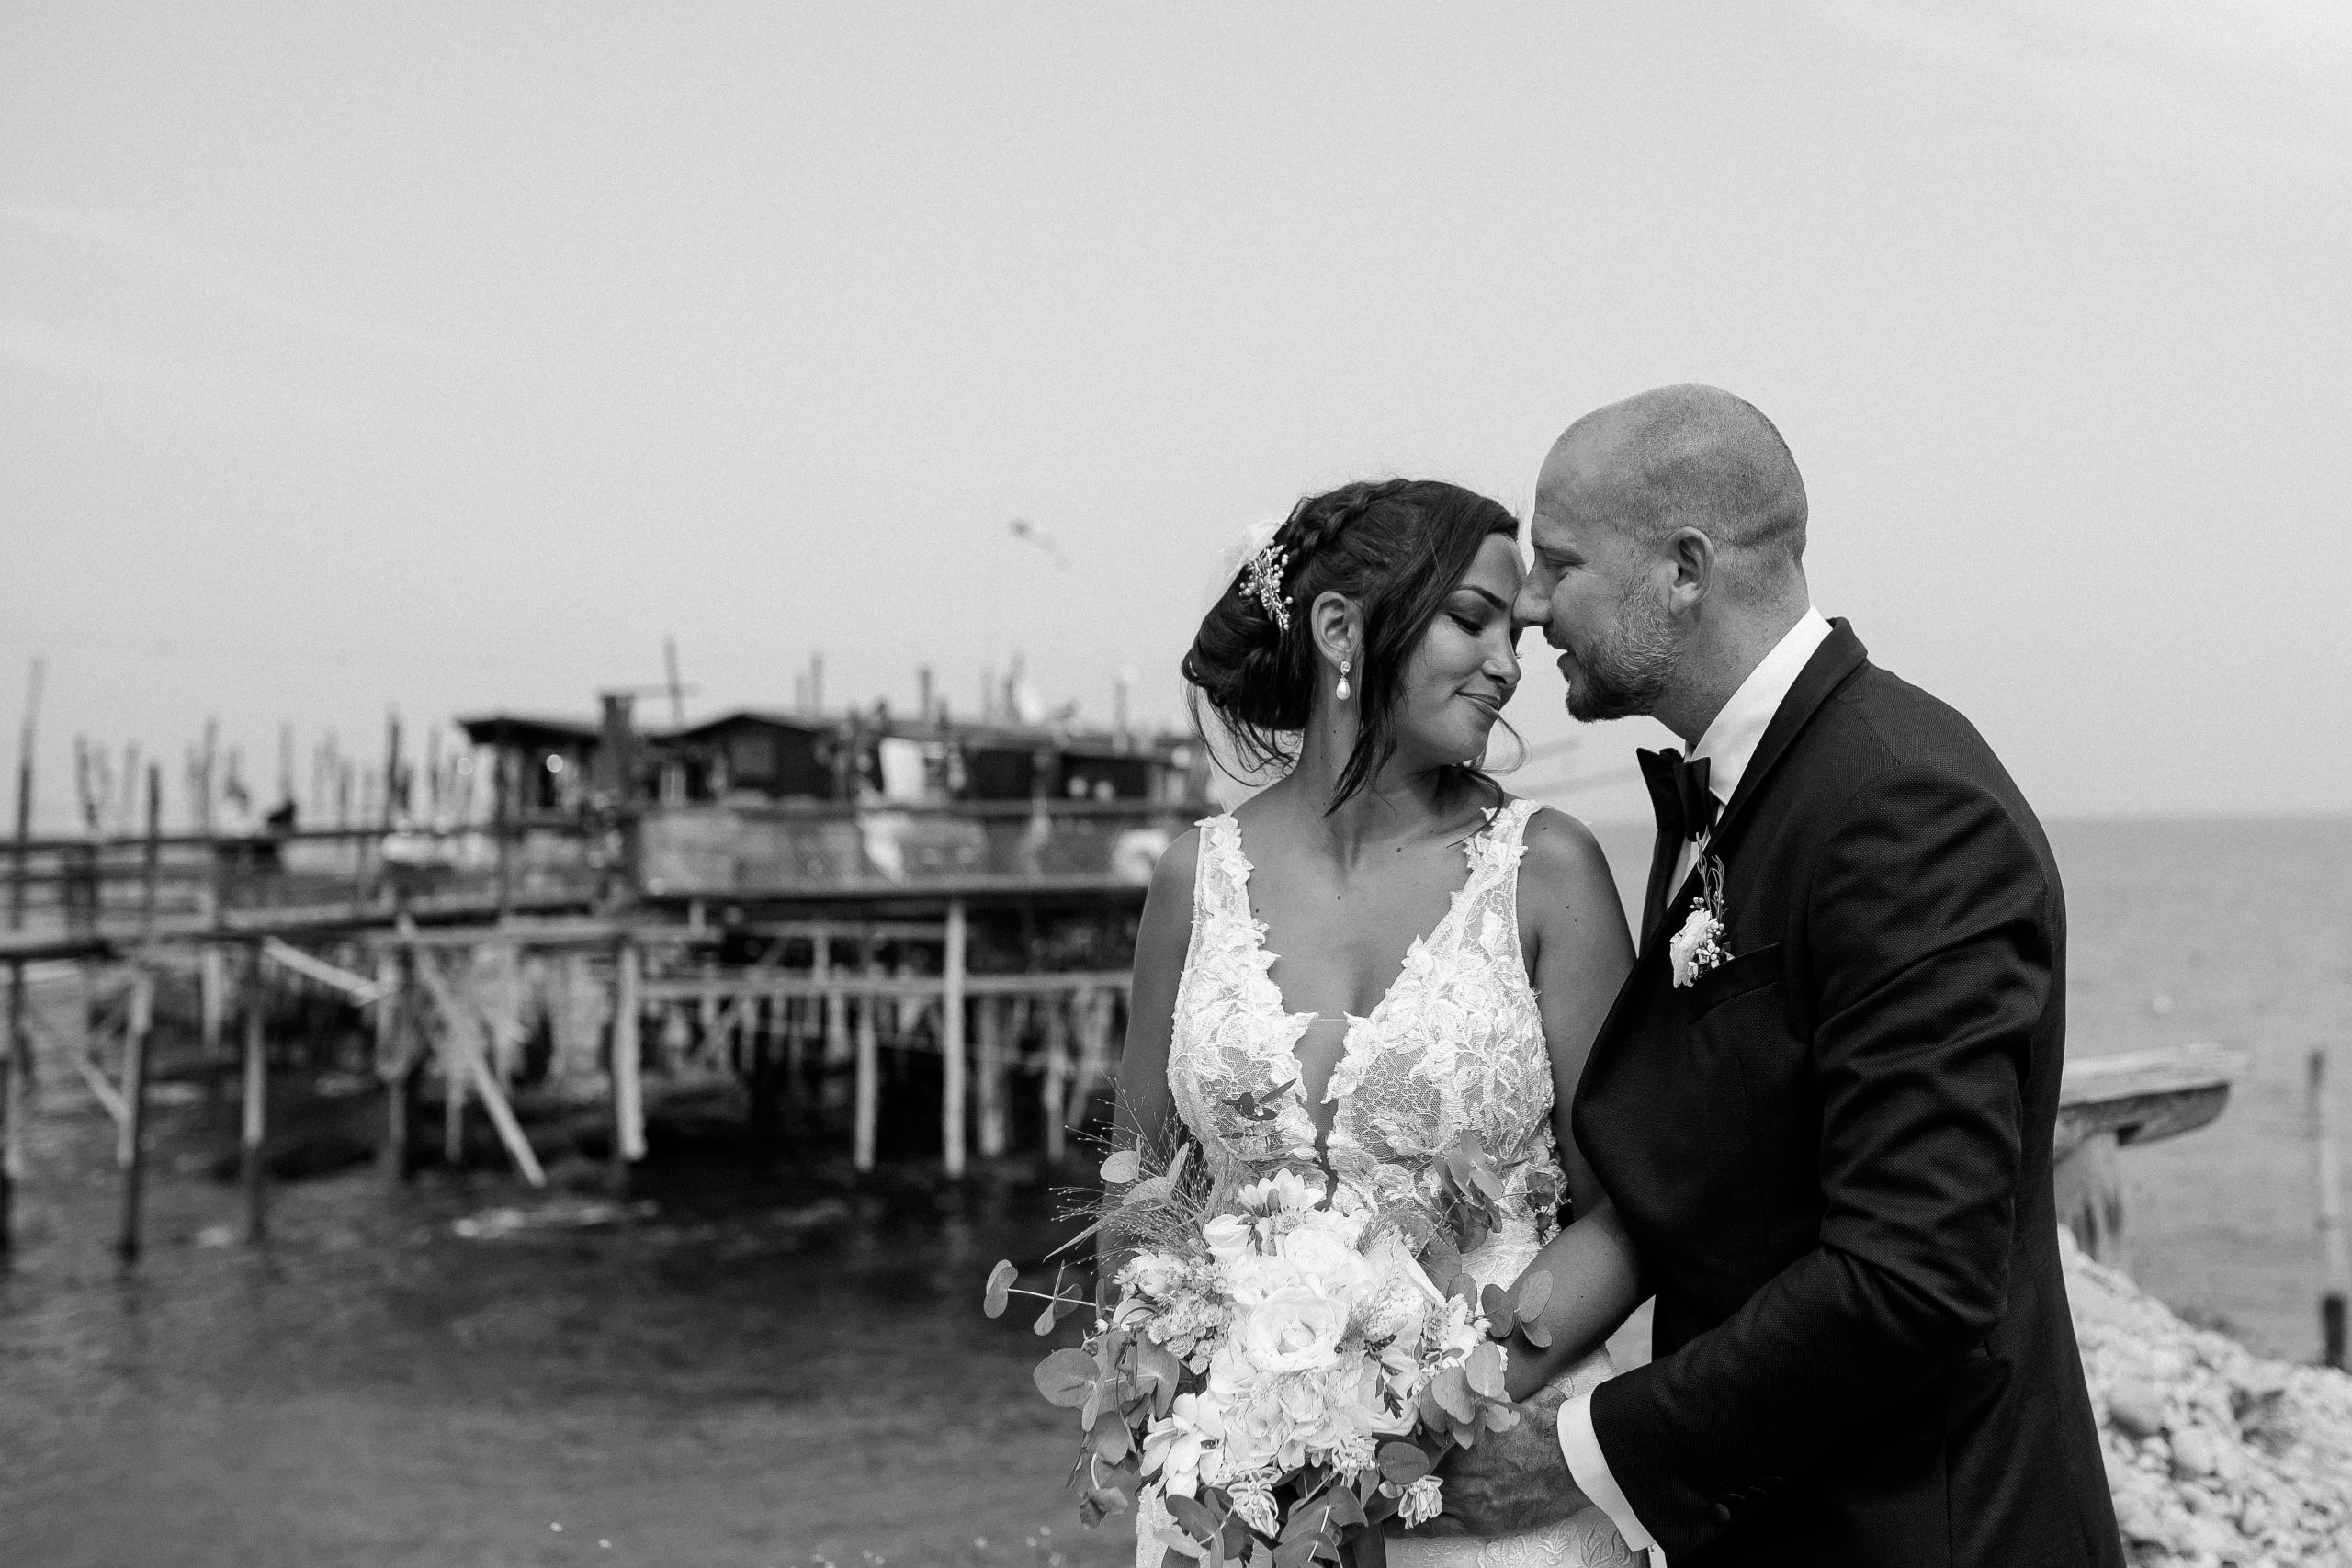 Aida + Tim | Hochzeitsfotografen am Bodensee Hochzeit - Pescara, Italien 